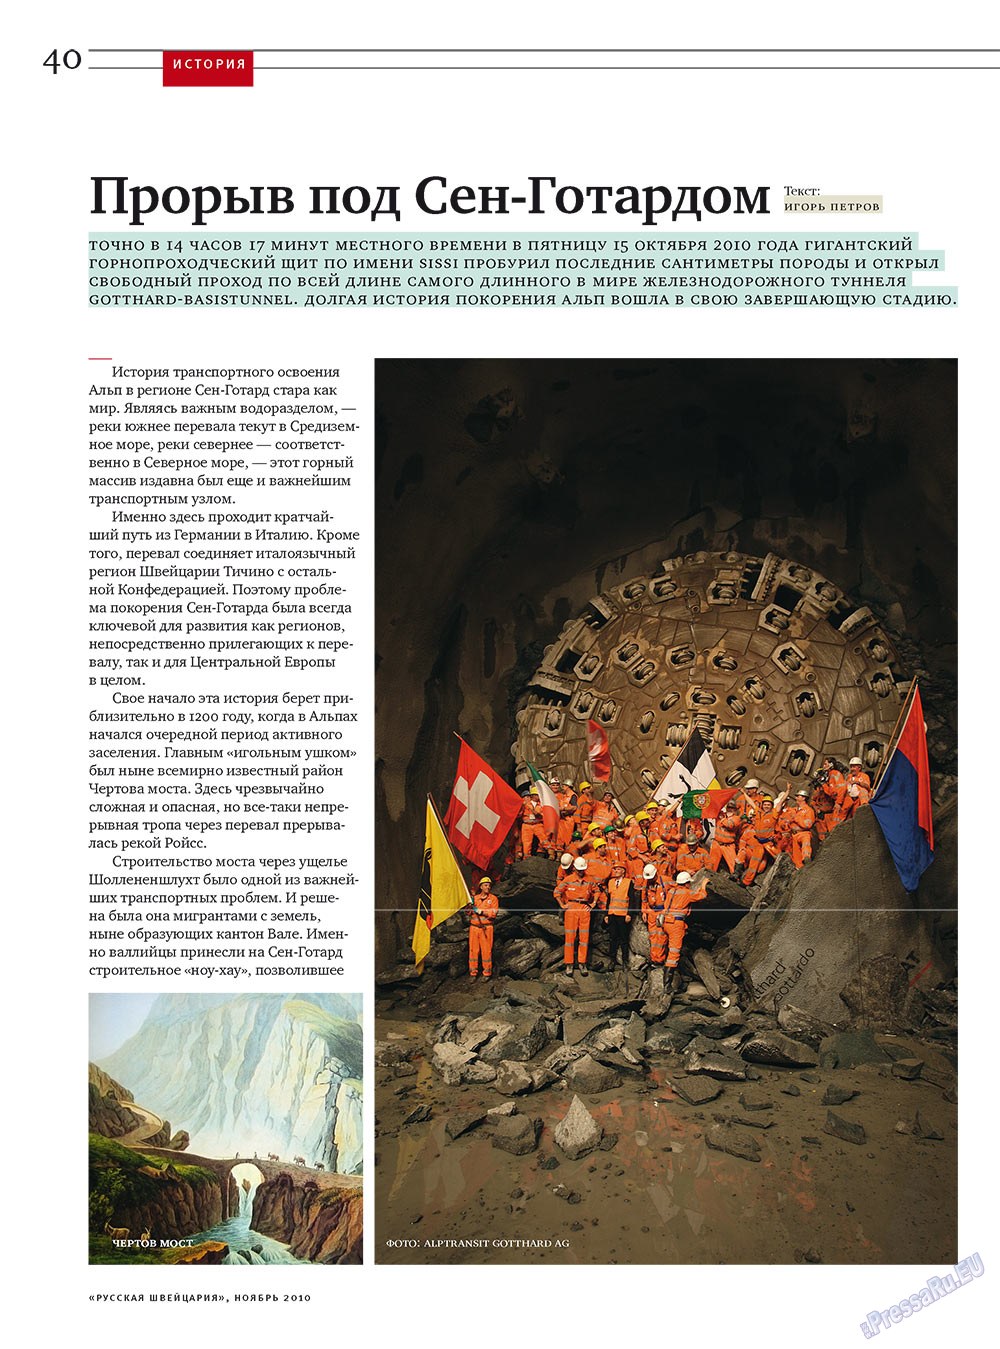 Русская Швейцария, журнал. 2010 №9 стр.40